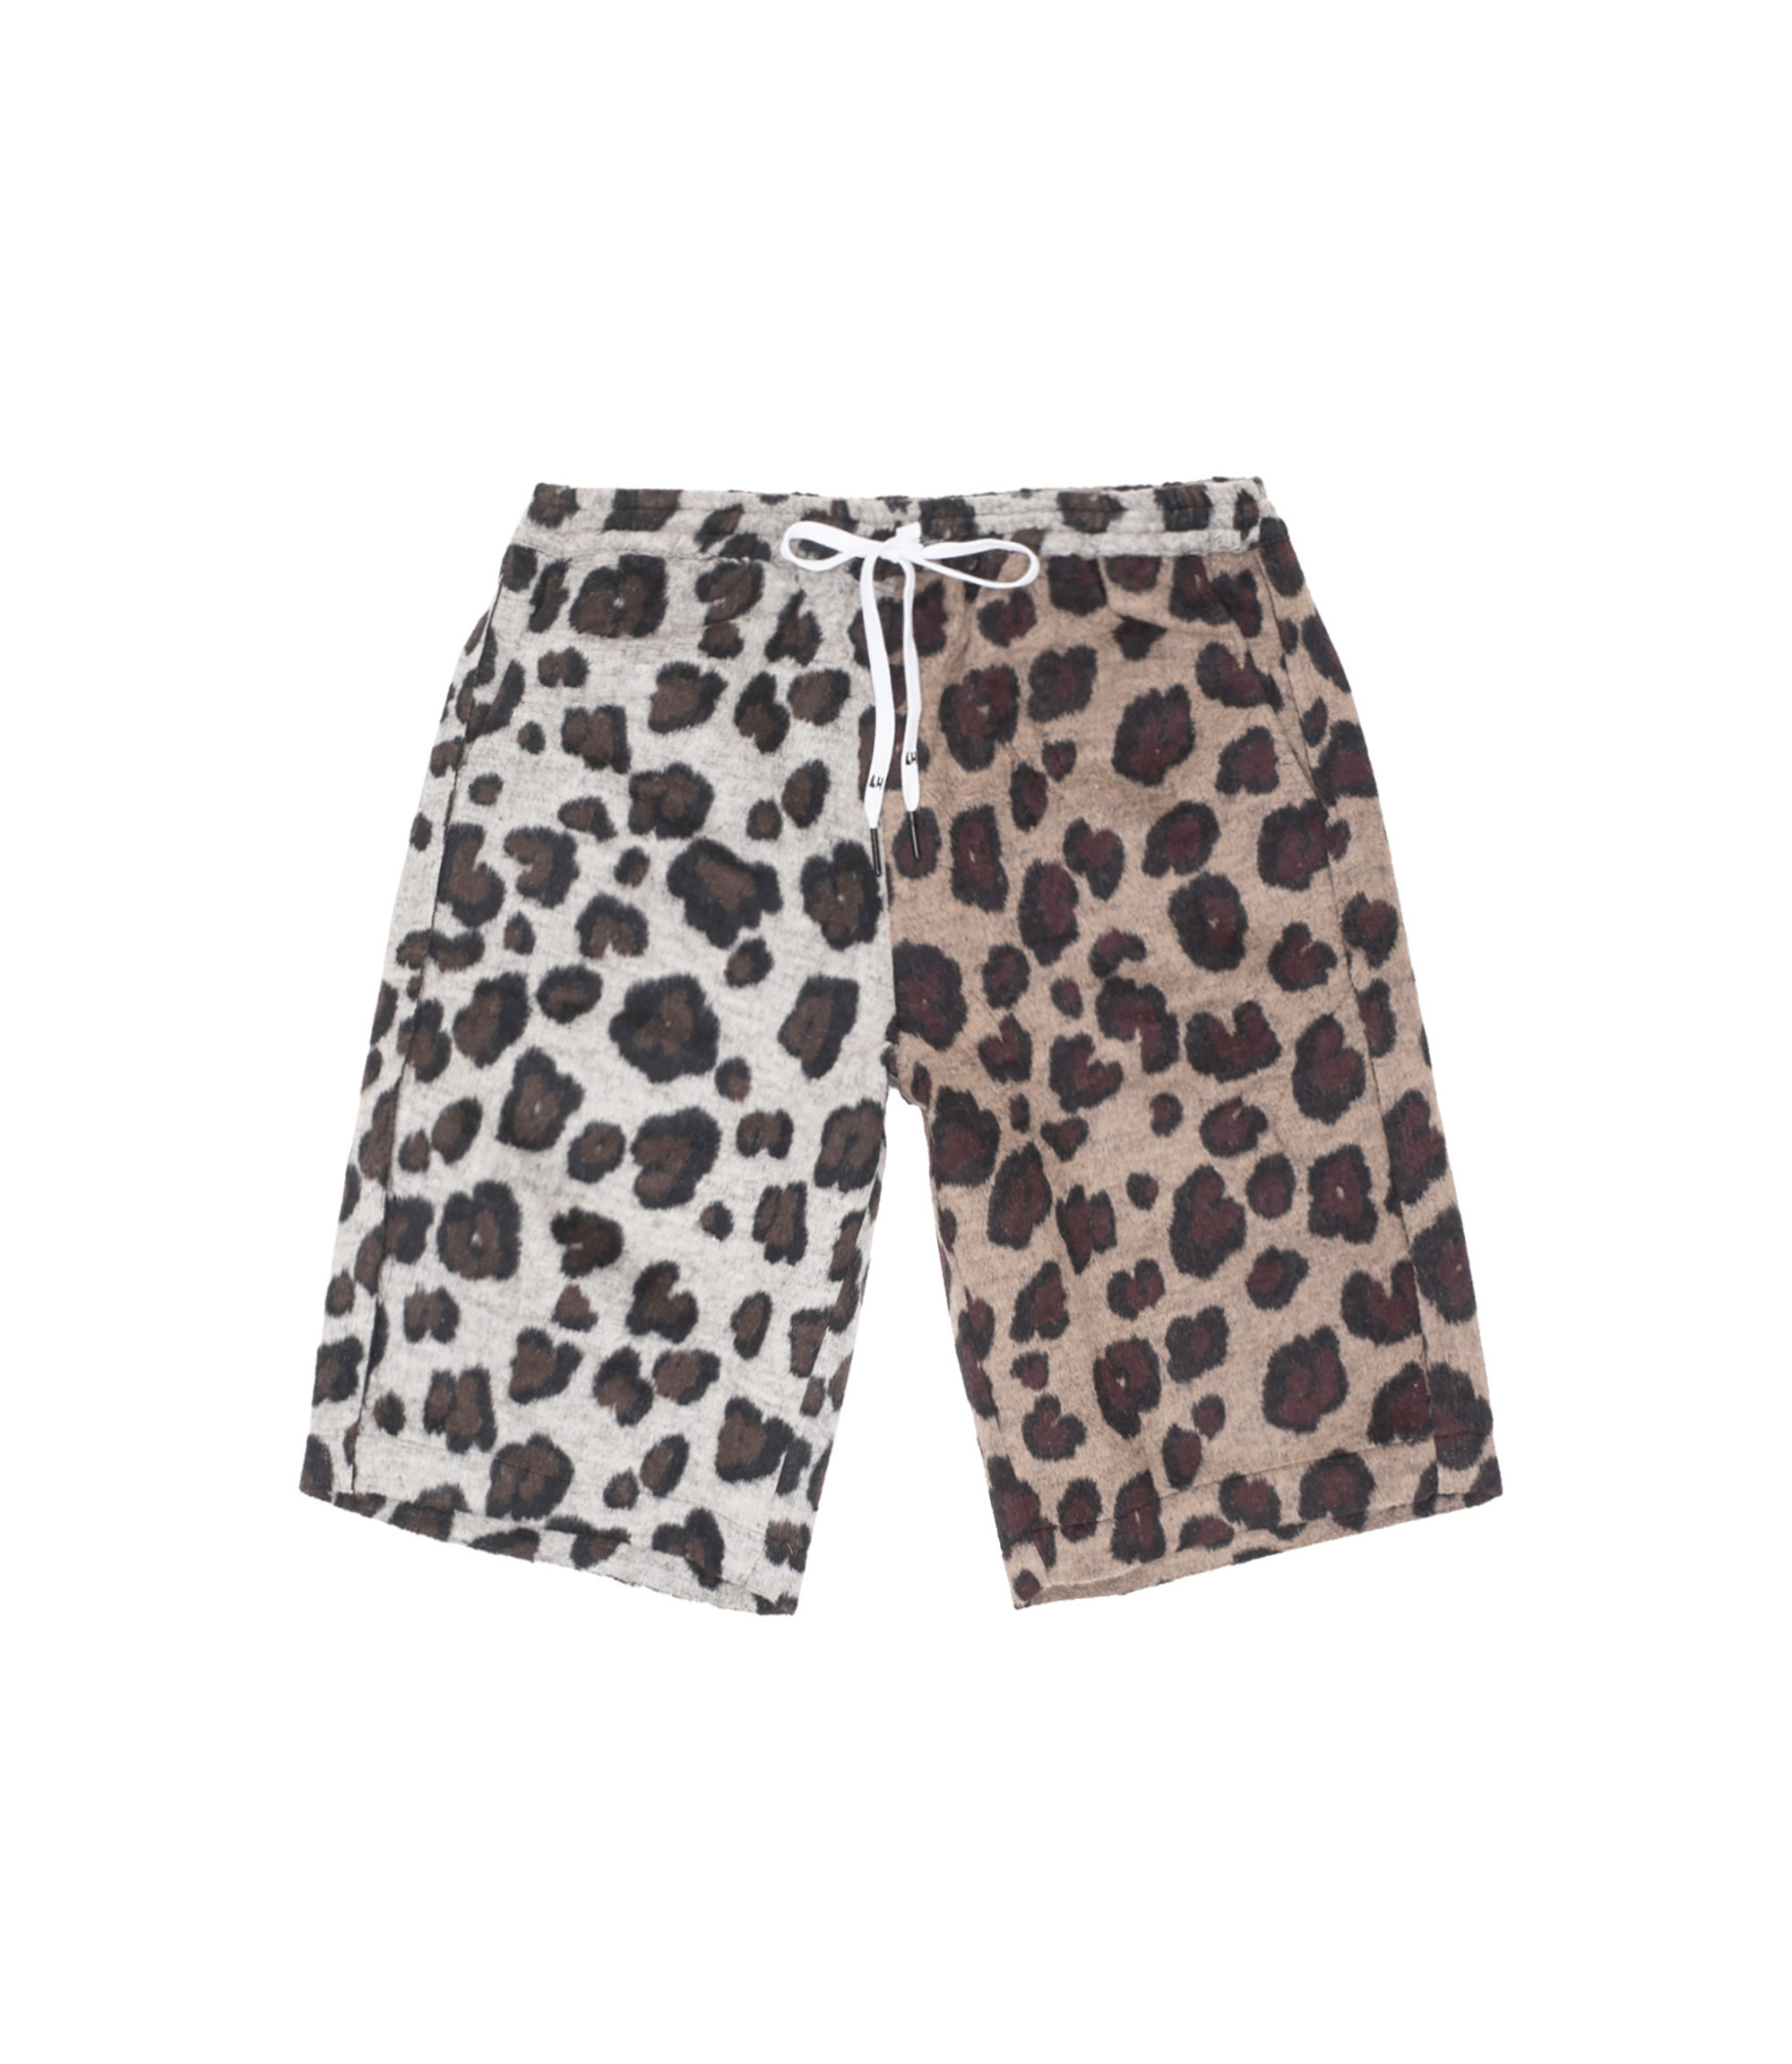 Shop Liam Hodges Grandad Leopard Shorts Tan at itk online store